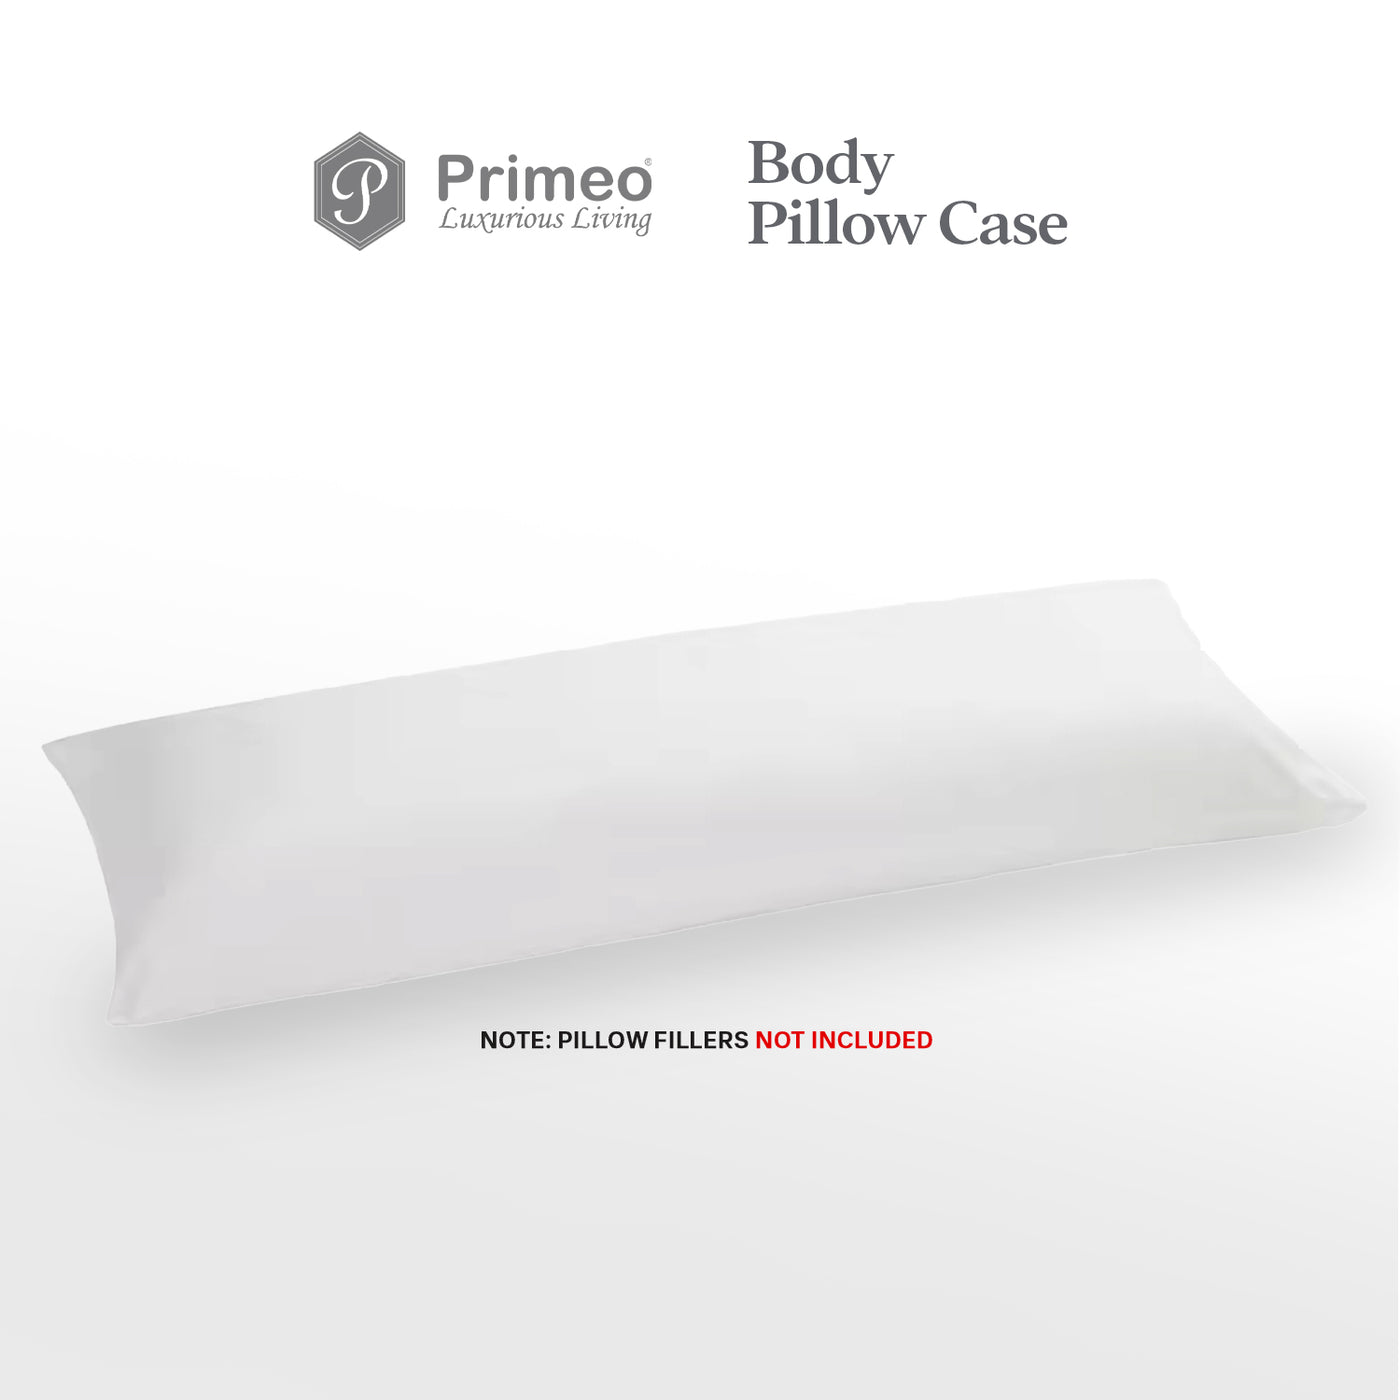 PRIMEO Premium Body Pillow Cover Standard Size